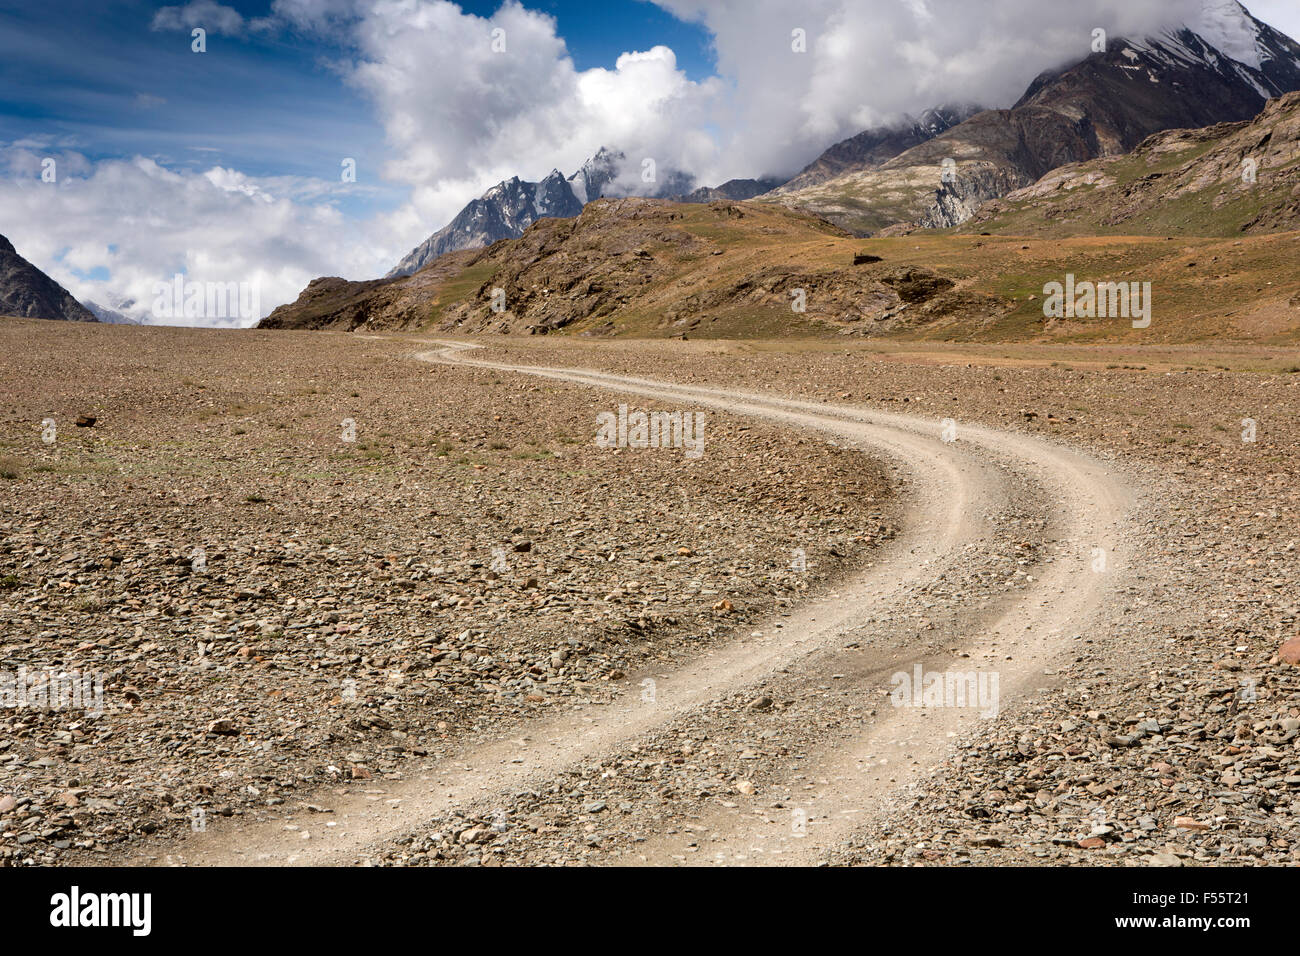 India, Himachal Pradesh, Spiti, Chandra Taal, rough road to Kunzum La pass Stock Photo